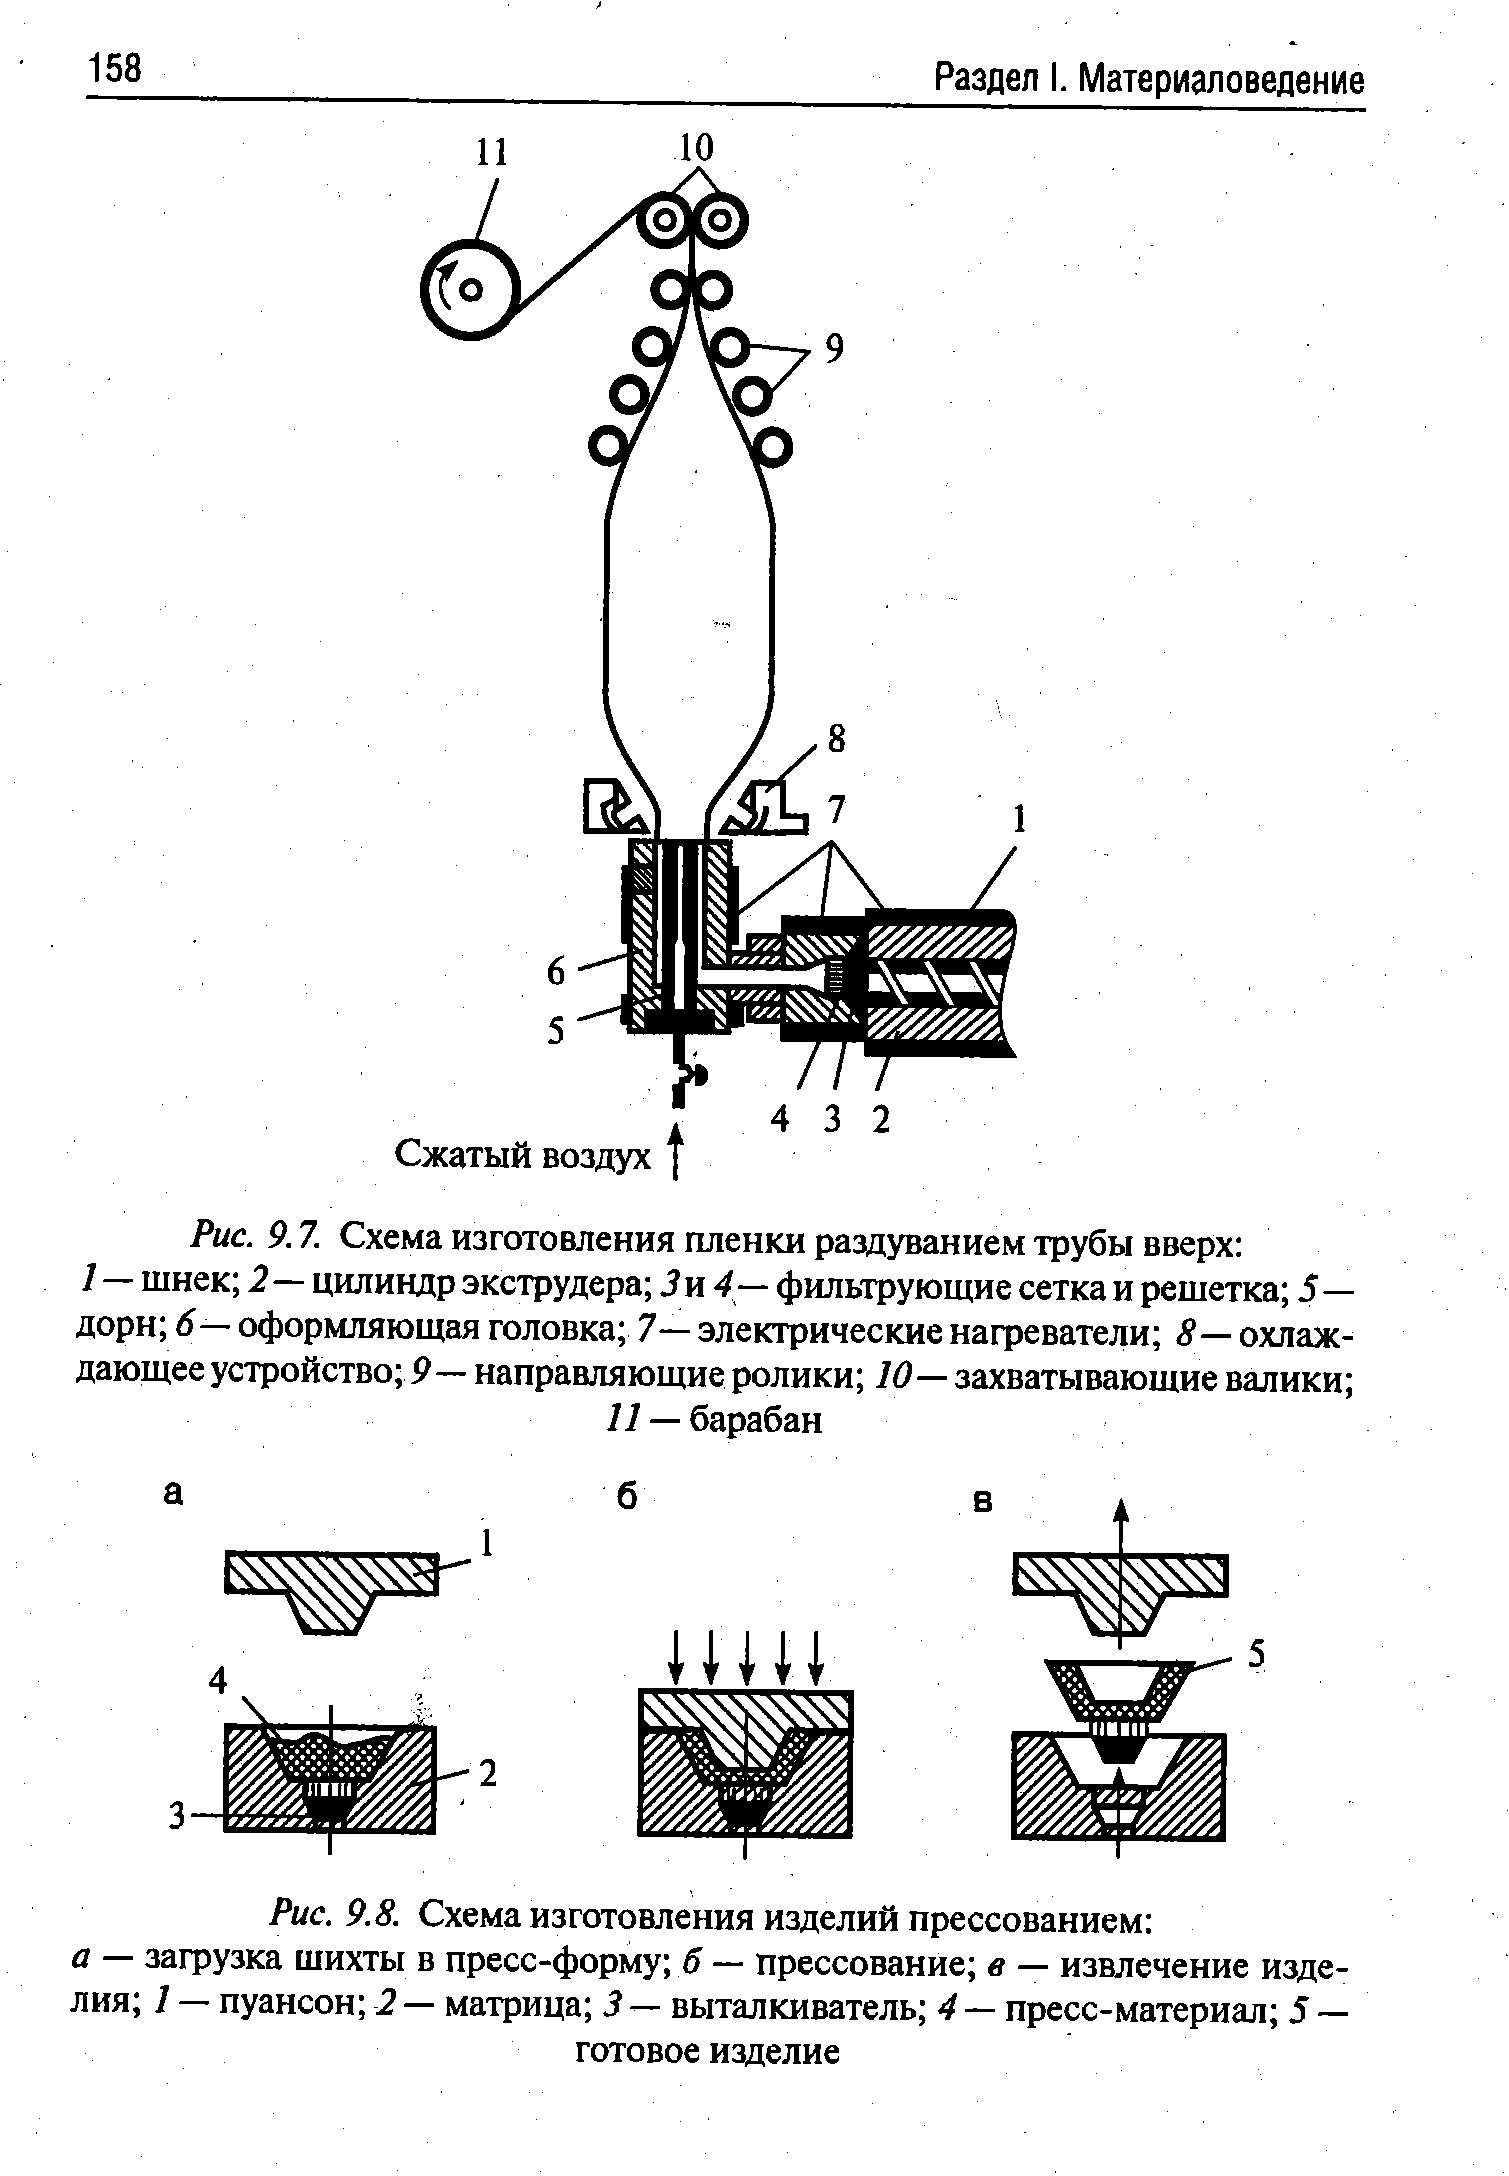 Рис. 9.7. Схема изготовления пленки раздуванием трубы вверх 
